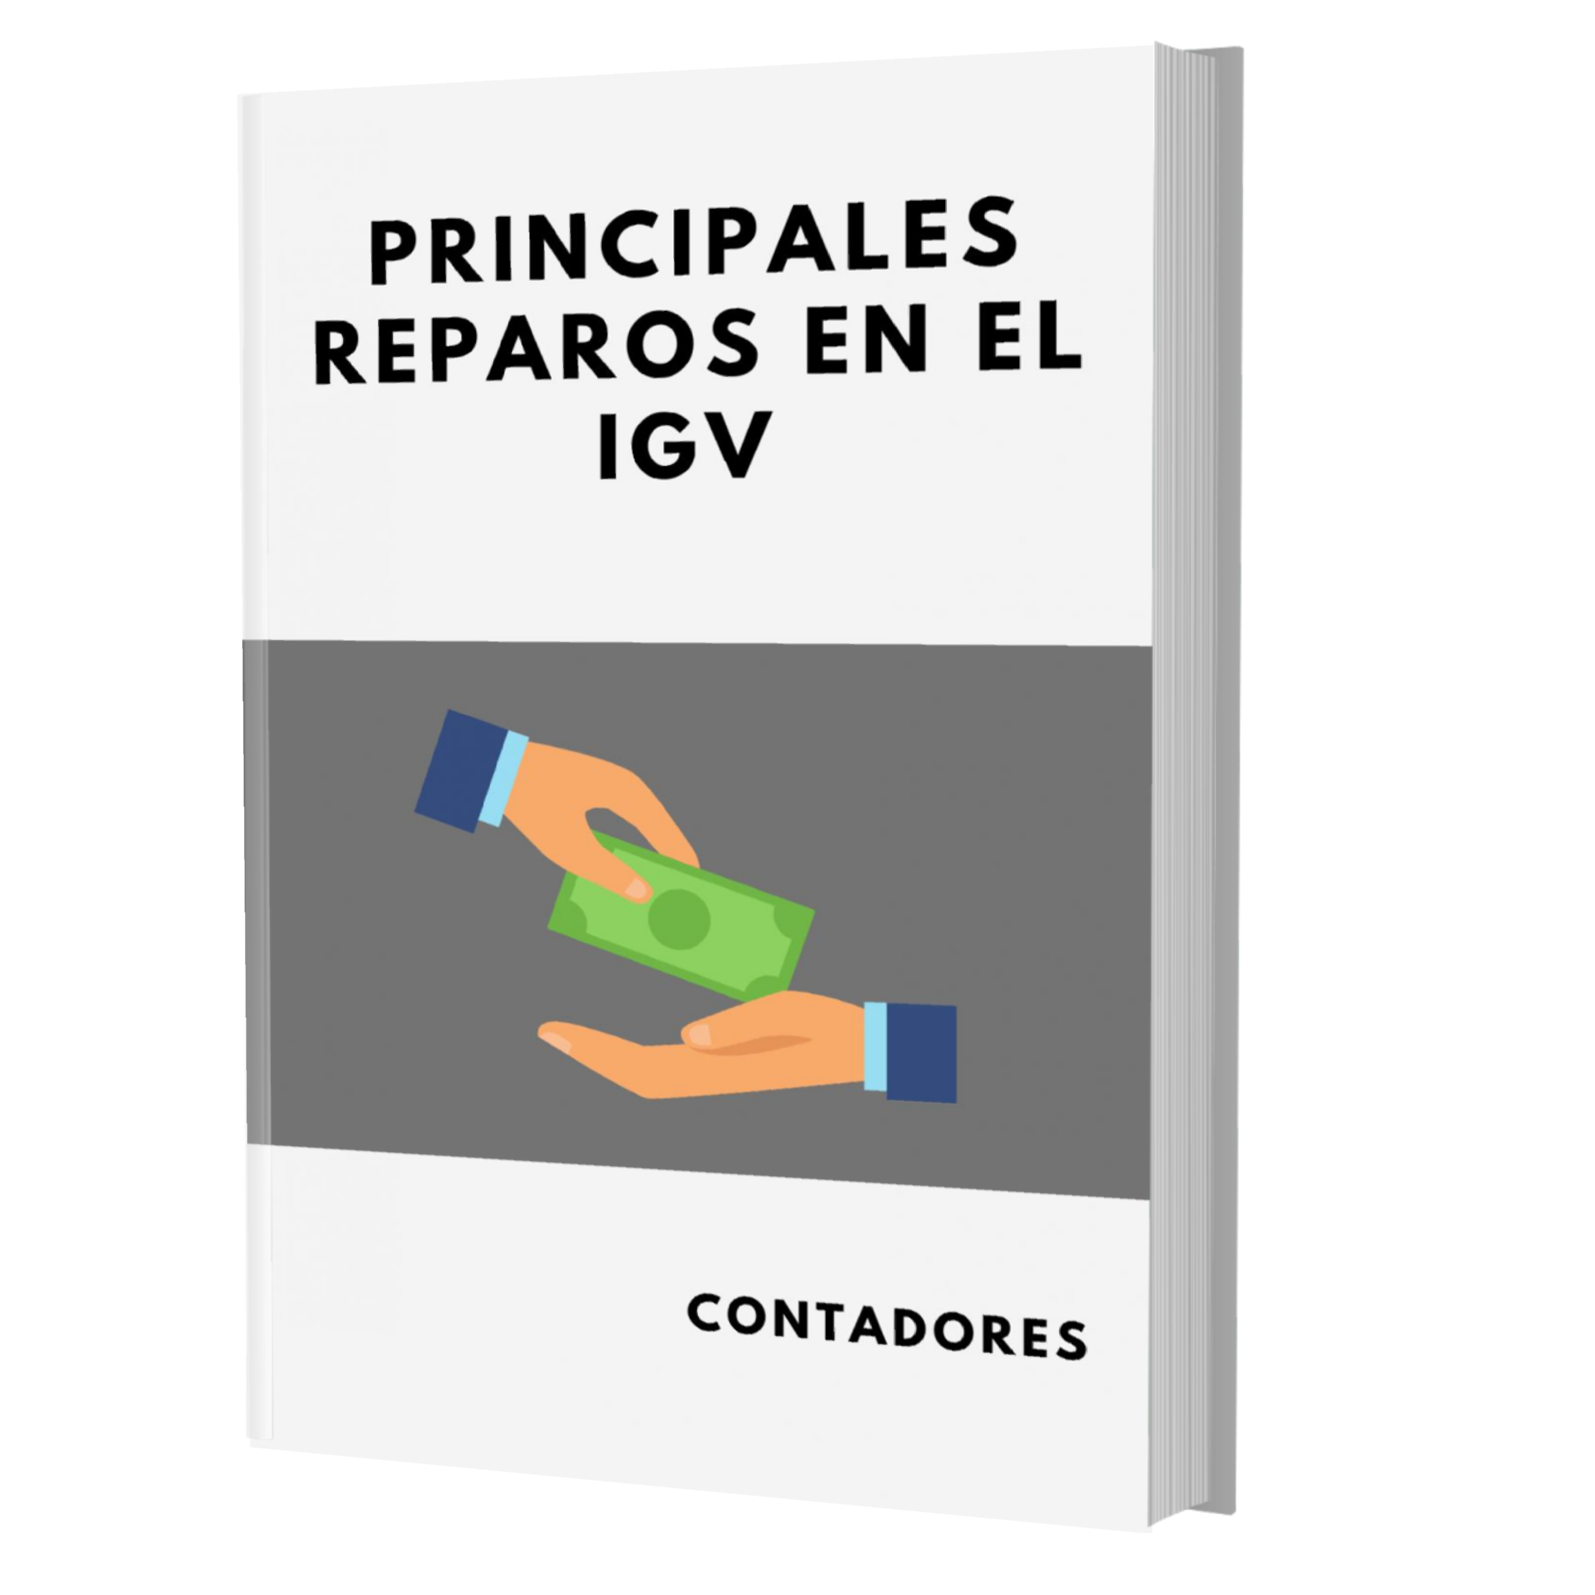 PRINCIPALES REPAROS EN EL IGV